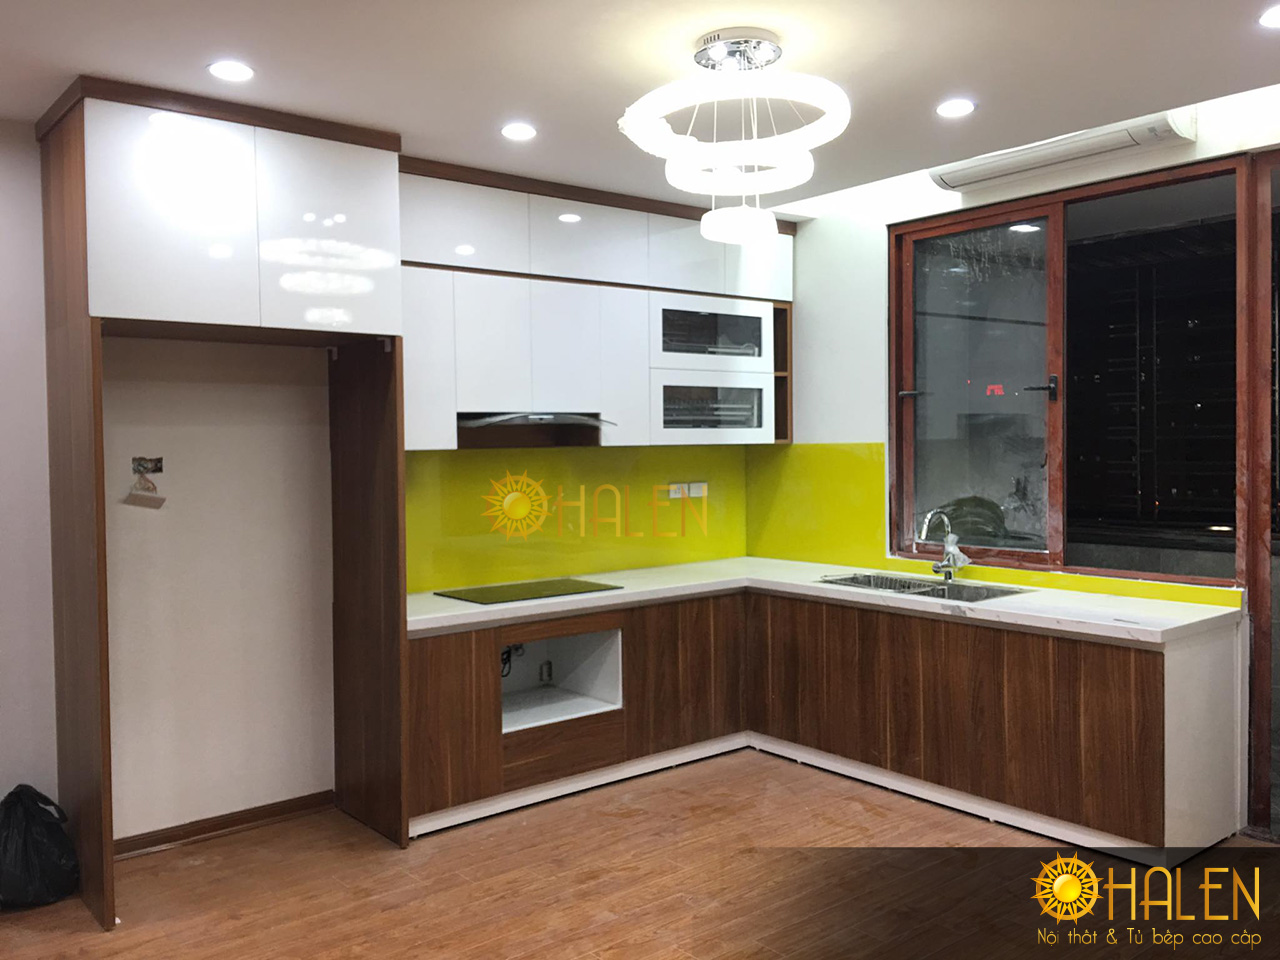 Tủ bếp sử dụng chất liệu gỗ Melamine với sự kết hợp màu trắng và màu vân gỗ